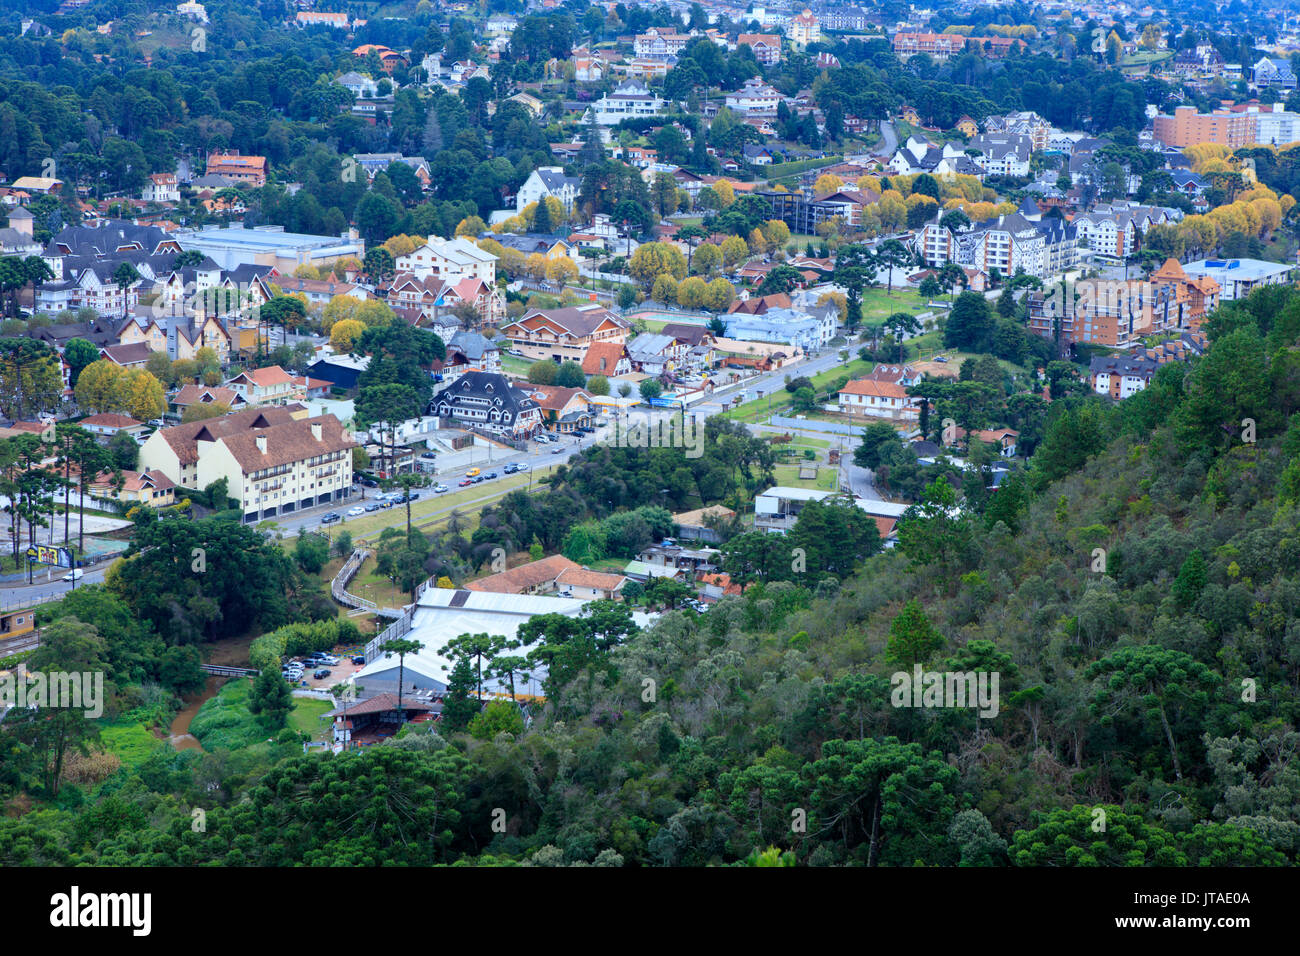 Vue de la ville de Campos do Jordao, un week-end populaire resort dans les montagnes près de Sao Paulo, Brésil, Amérique du Sud Banque D'Images